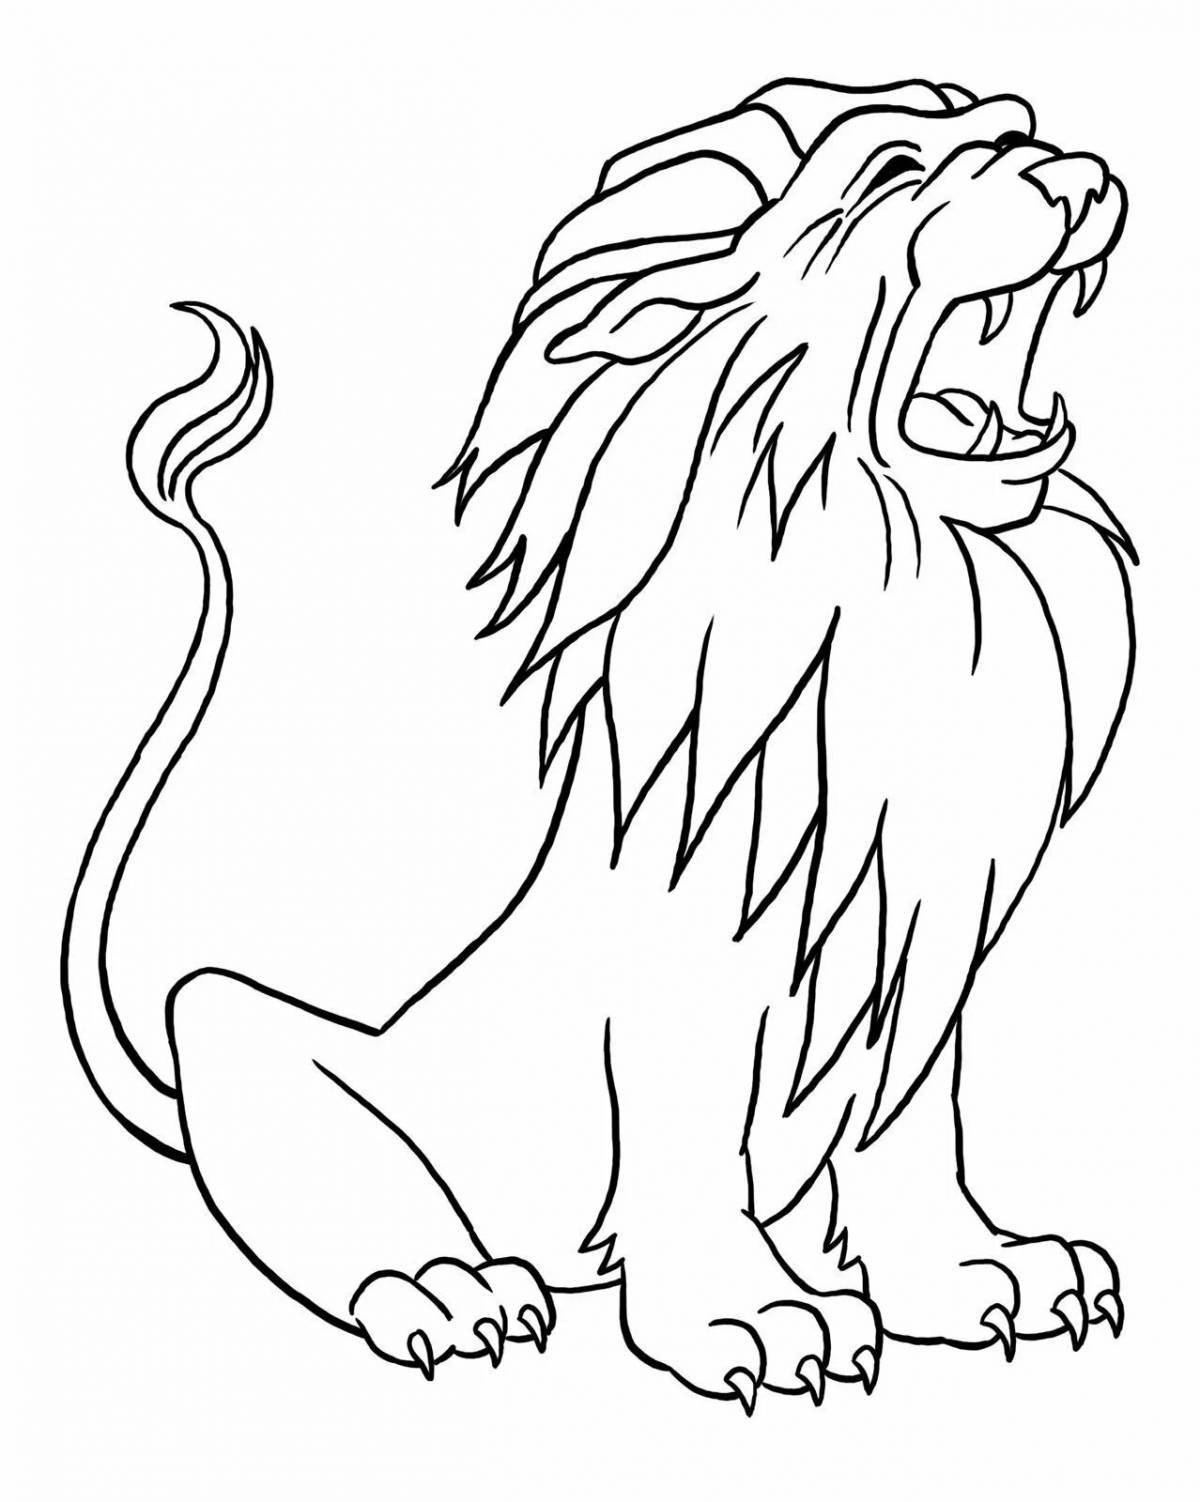 Сказочная раскраска льва для детей